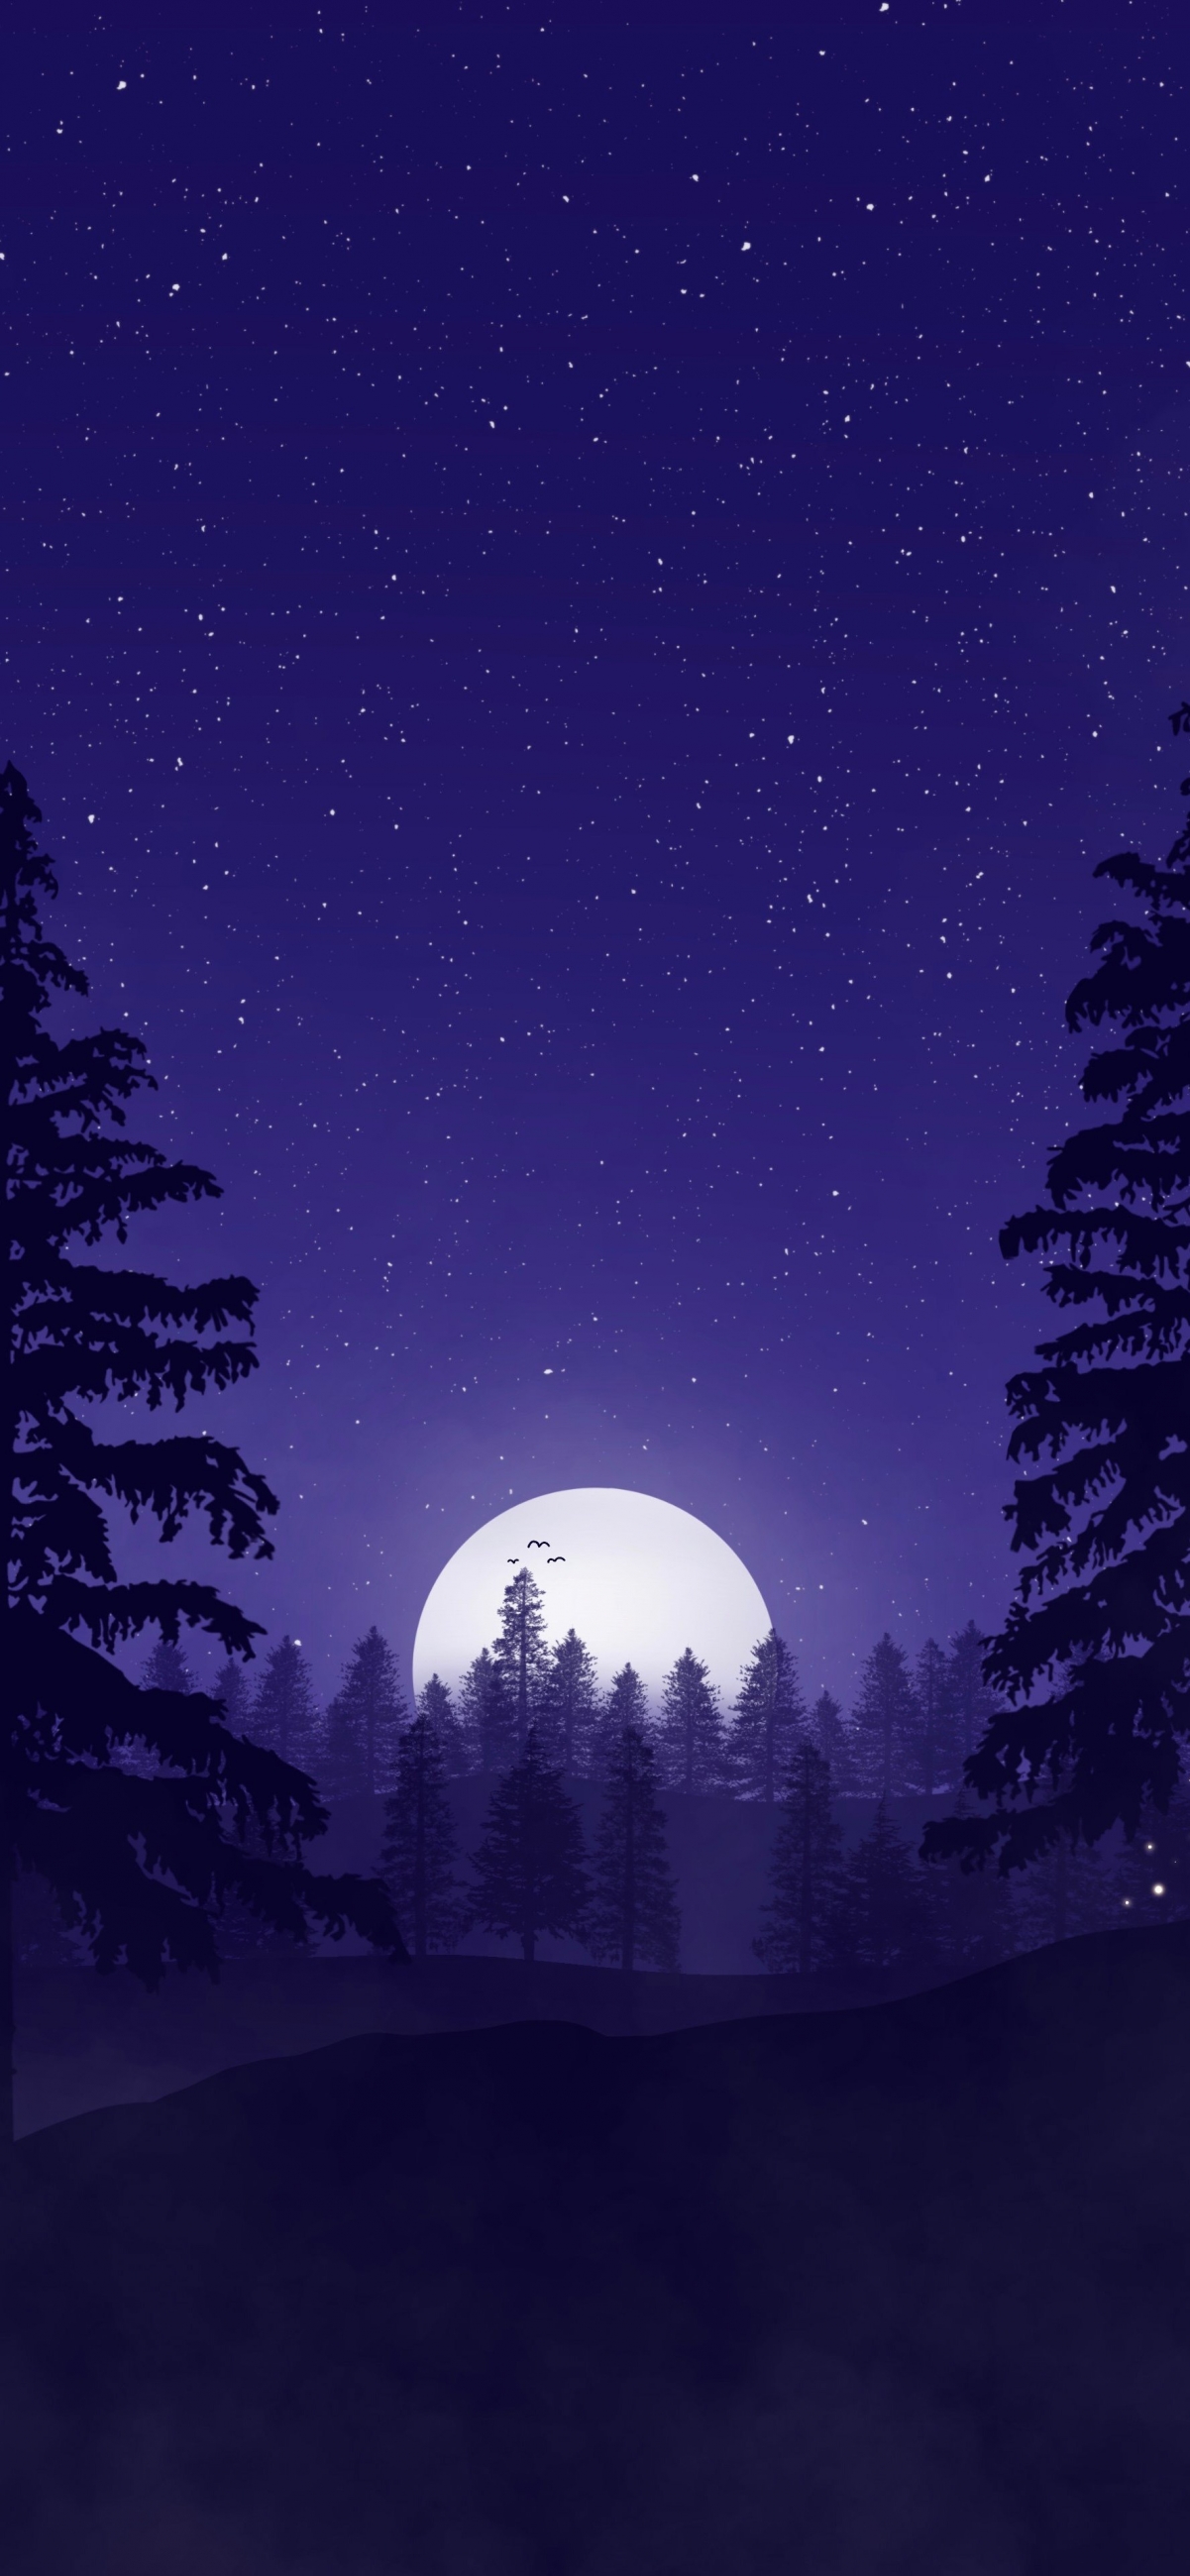 简约 山 森林 星空 月亮 4k背景图手机壁纸